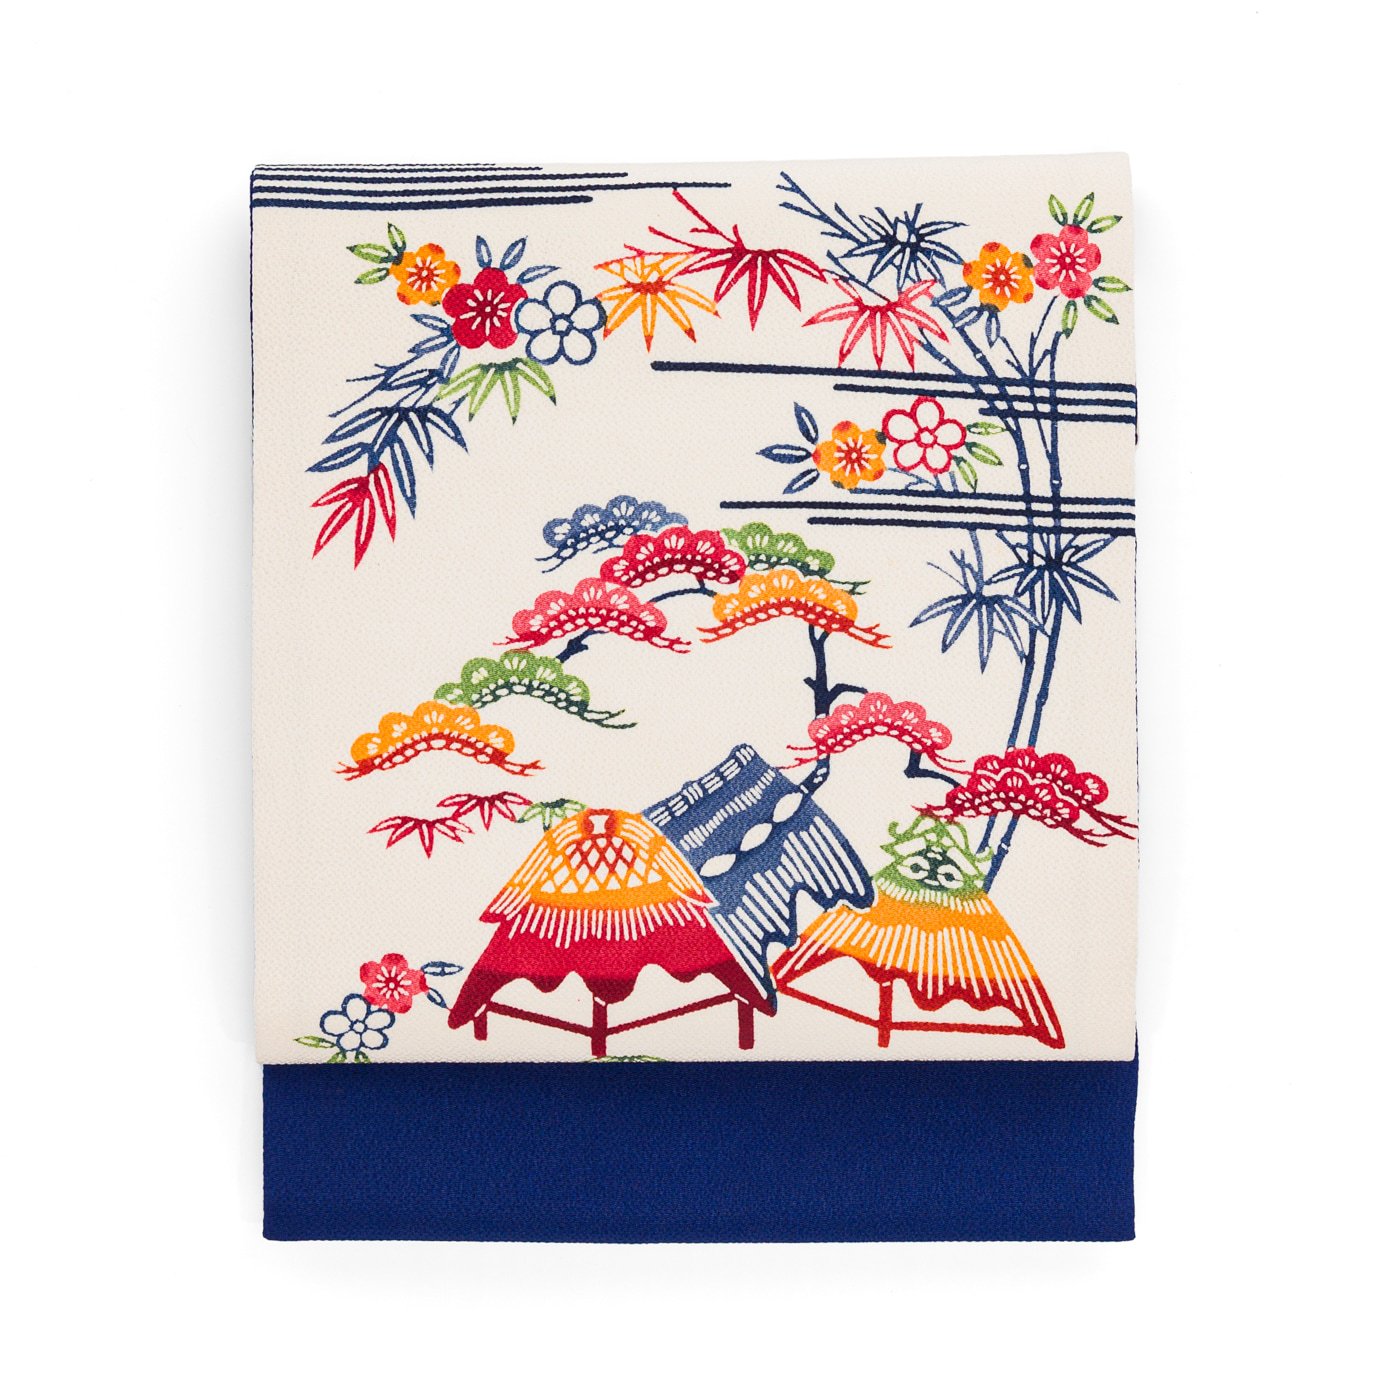 「藁葺の家と松竹梅」の商品画像